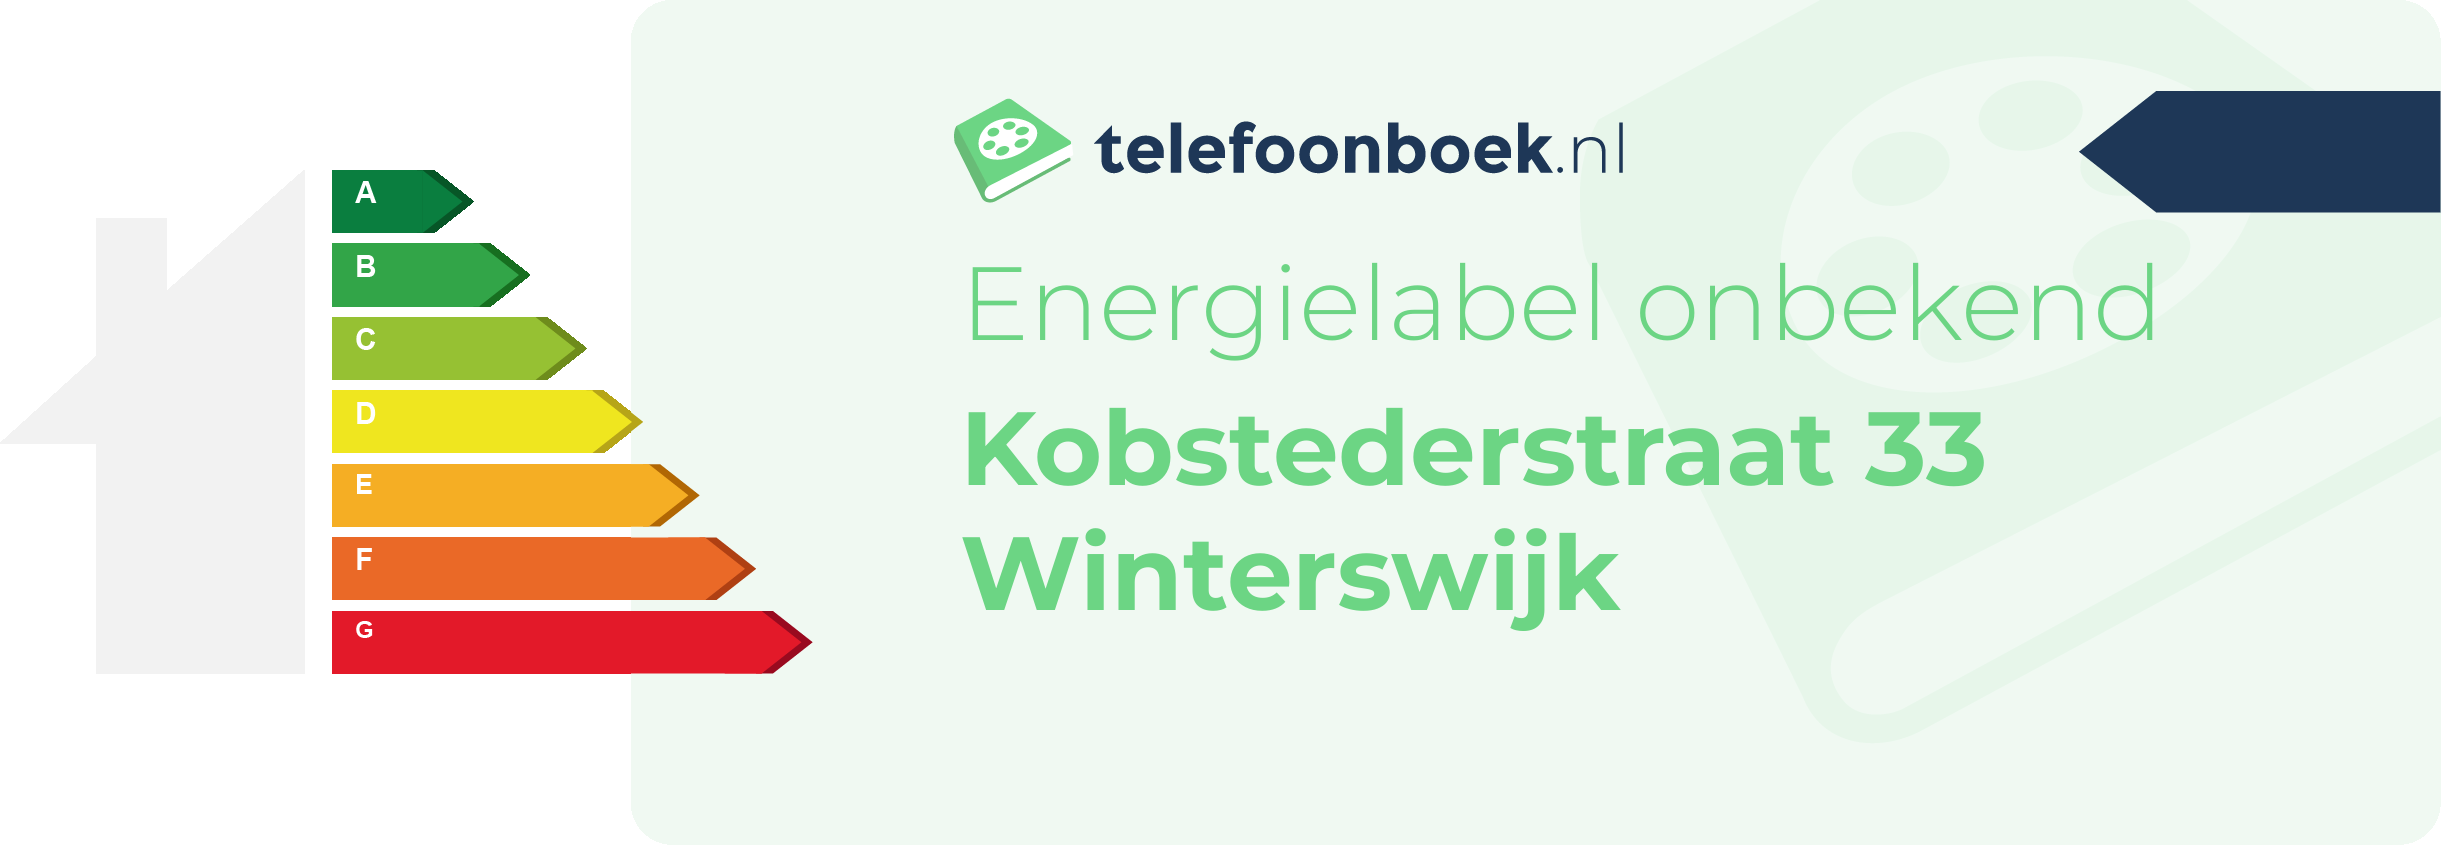 Energielabel Kobstederstraat 33 Winterswijk